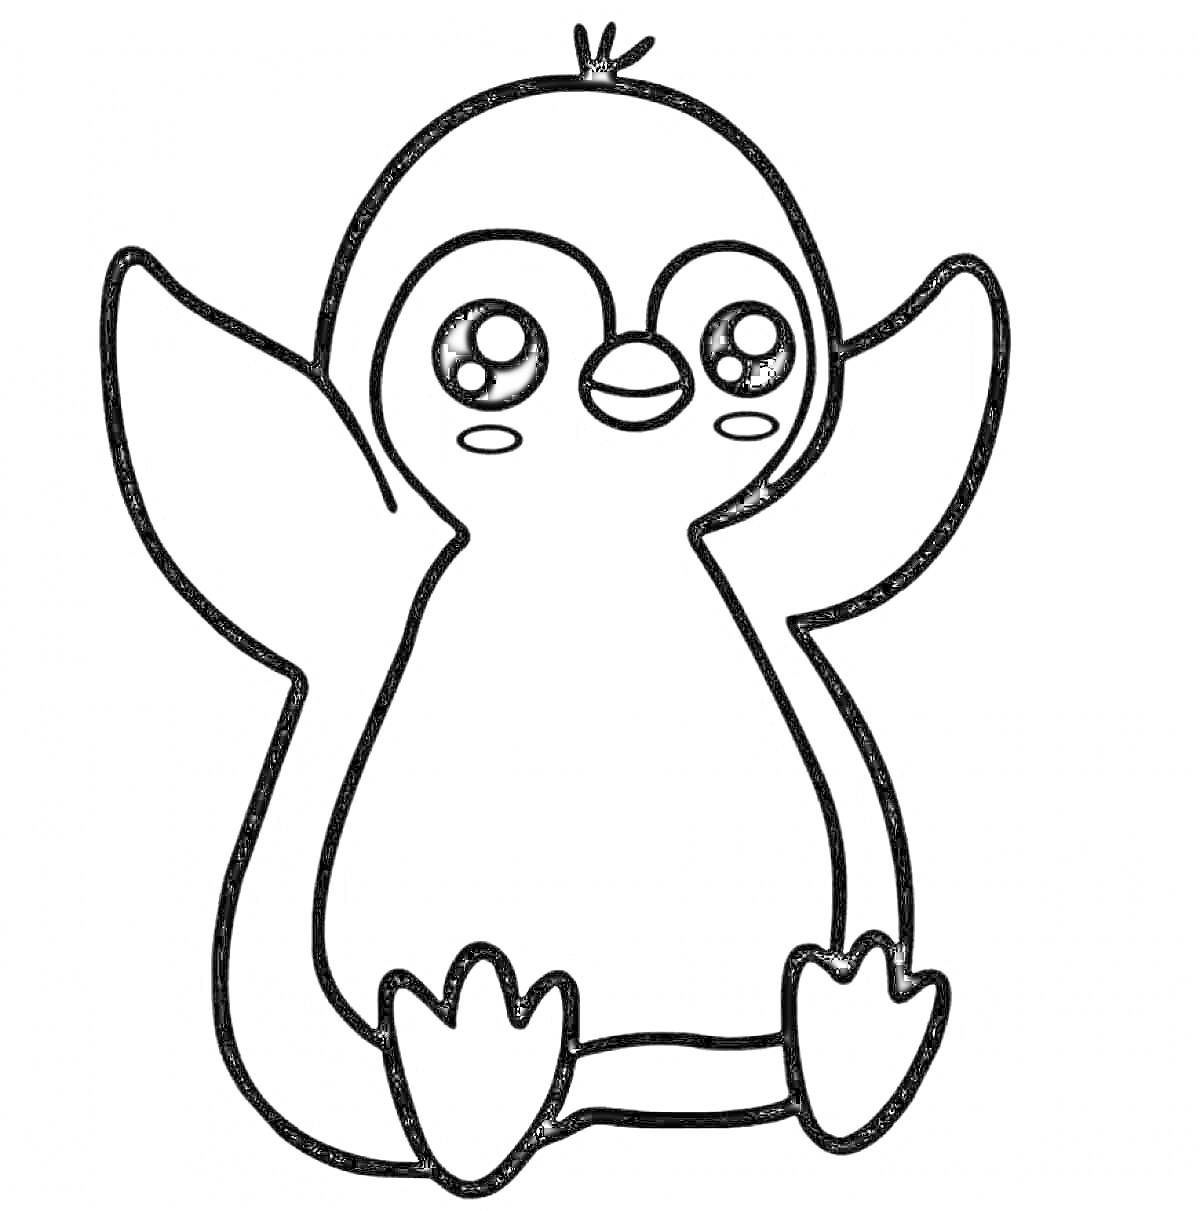 Раскраска пингвин с поднятыми крыльями и большими глазами для раскрашивания